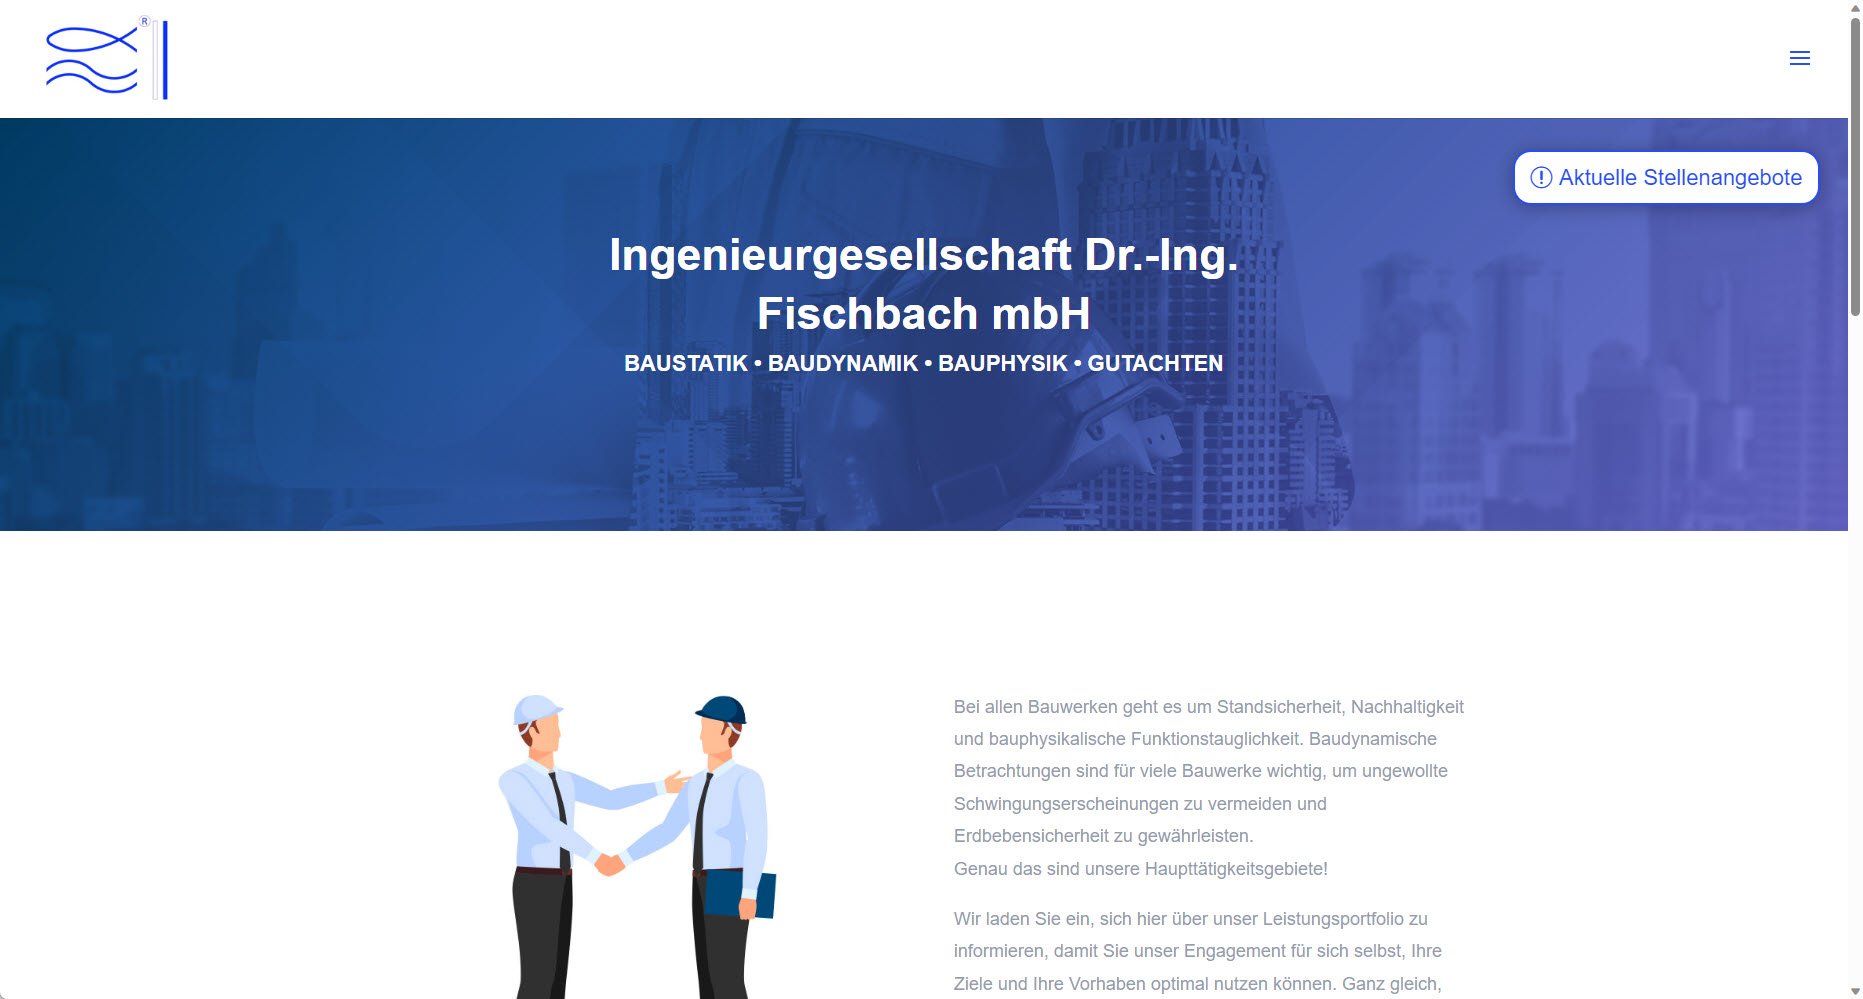 Ingenieurgesellschaft Dr.-Ing. Fischbach mbH